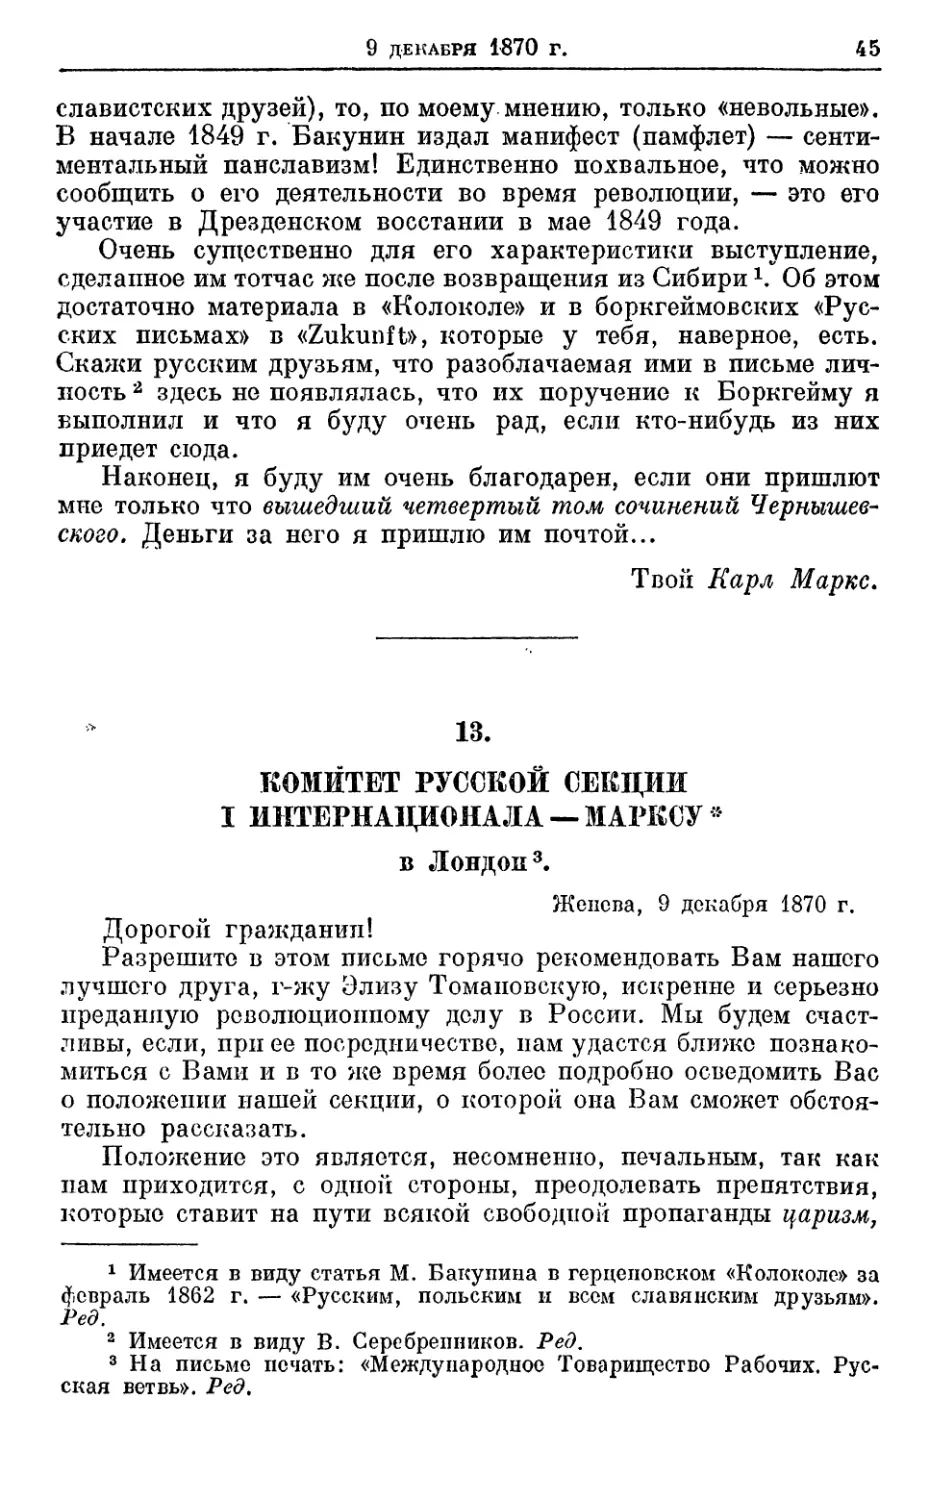 13. Комитет Русской секции I Интернационала — Марксу*, 9 декабря 1870г